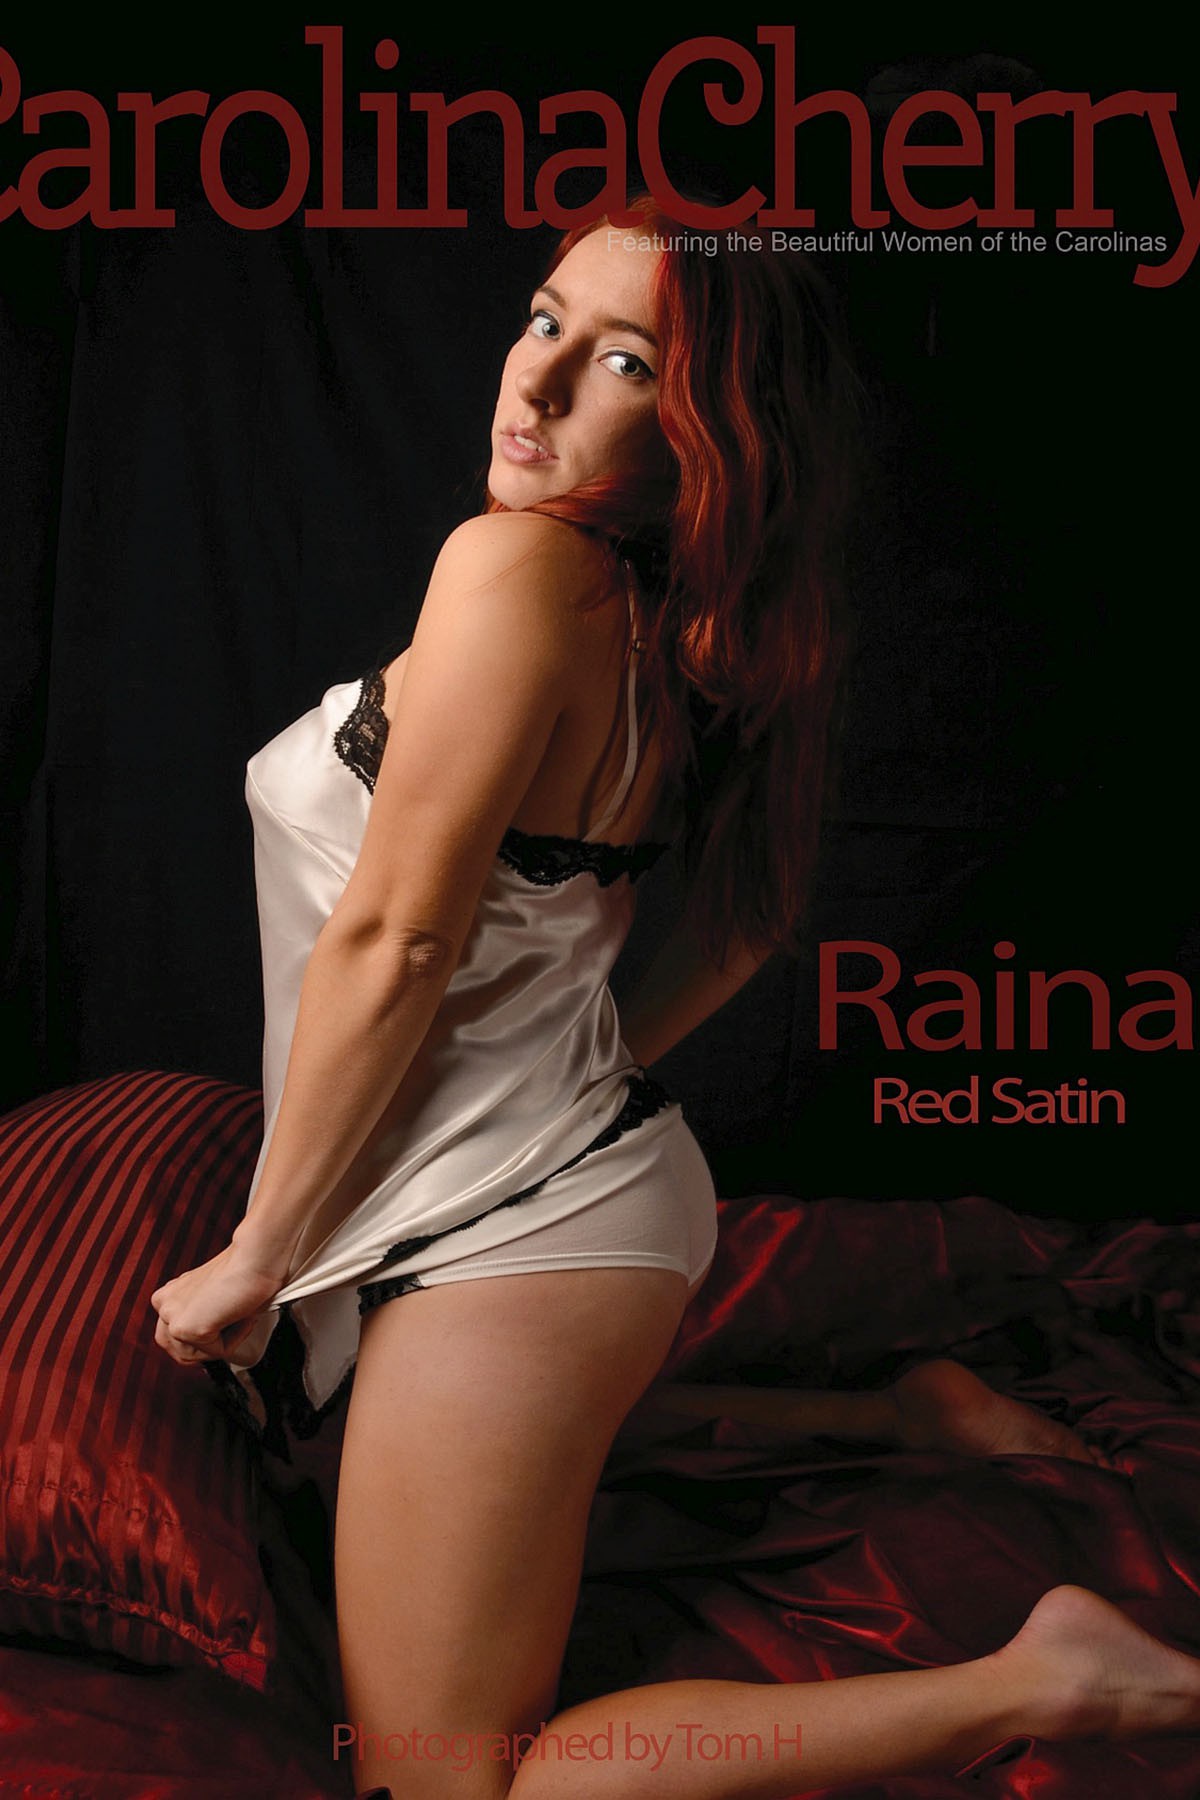 CarolinaCherry-Raina-Red-Satin-0000-4015764751.jpg